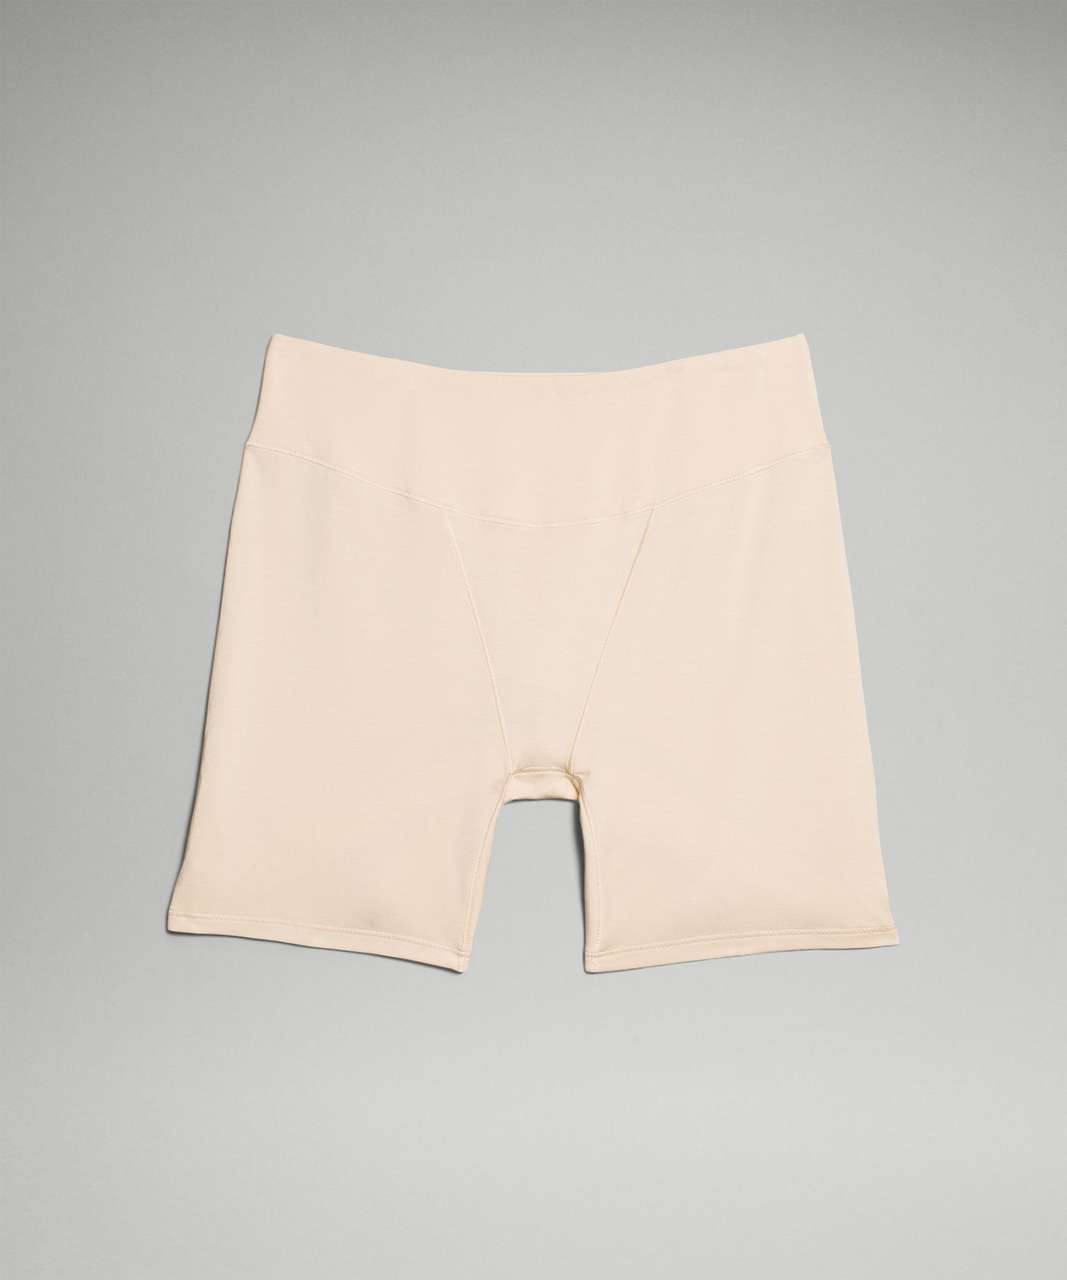 Lululemon UnderEase Super-High-Rise Shortie Underwear 5" - Pale Linen